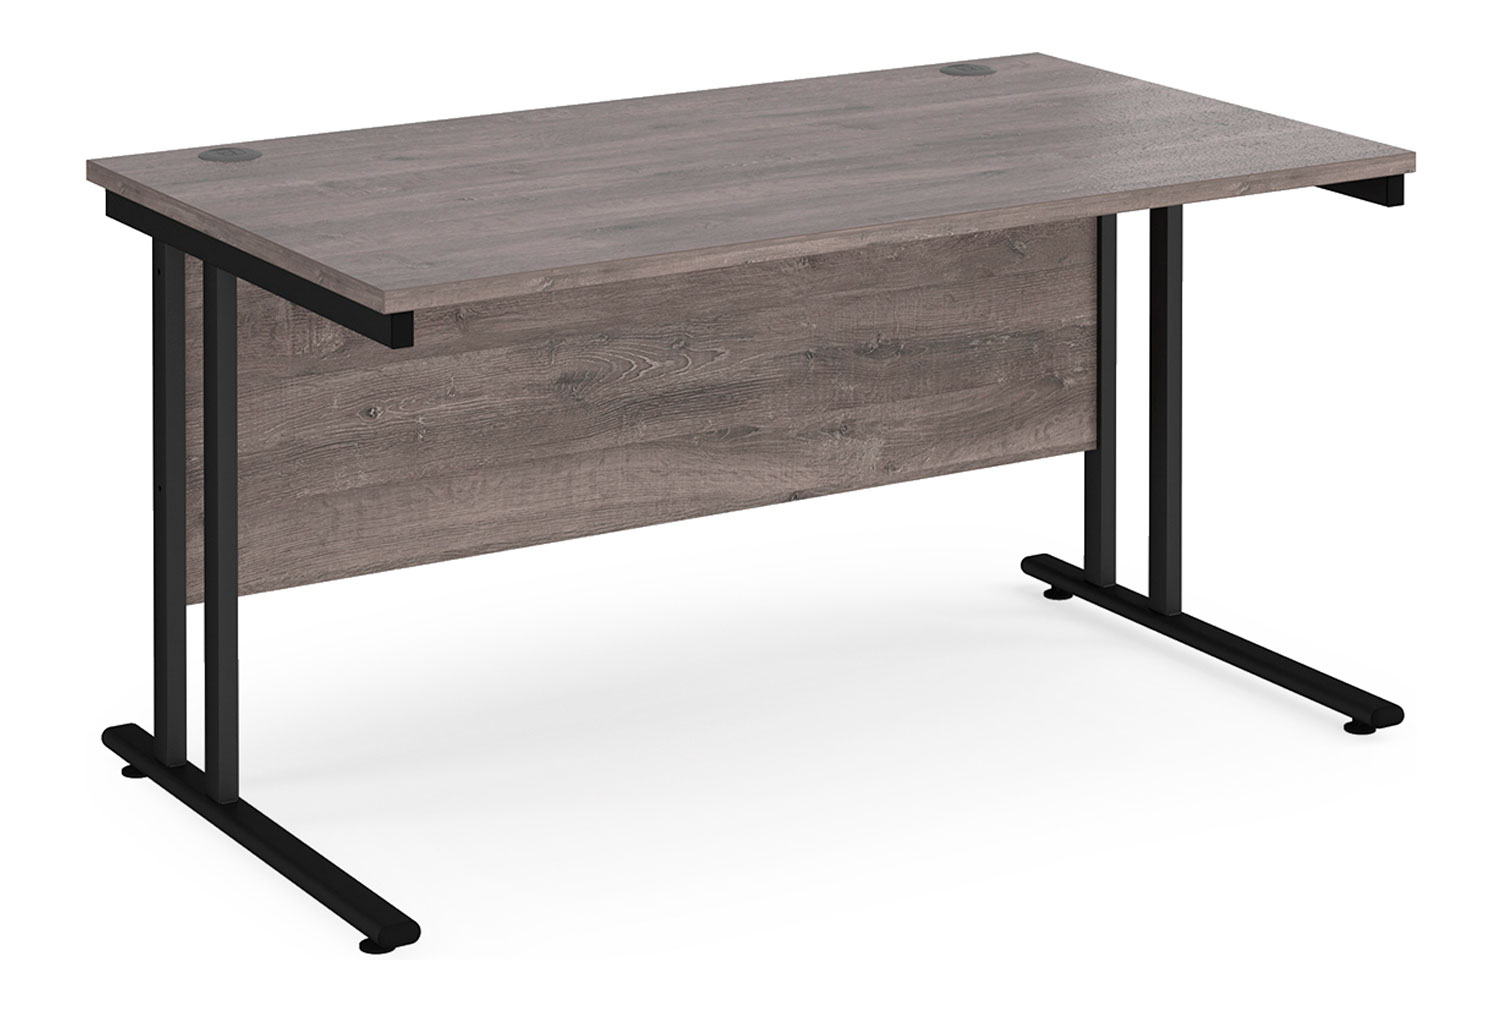 Value Line Deluxe C-Leg Rectangular Office Desk (Black Legs), 140wx80dx73h (cm), Grey Oak, Fully Installed